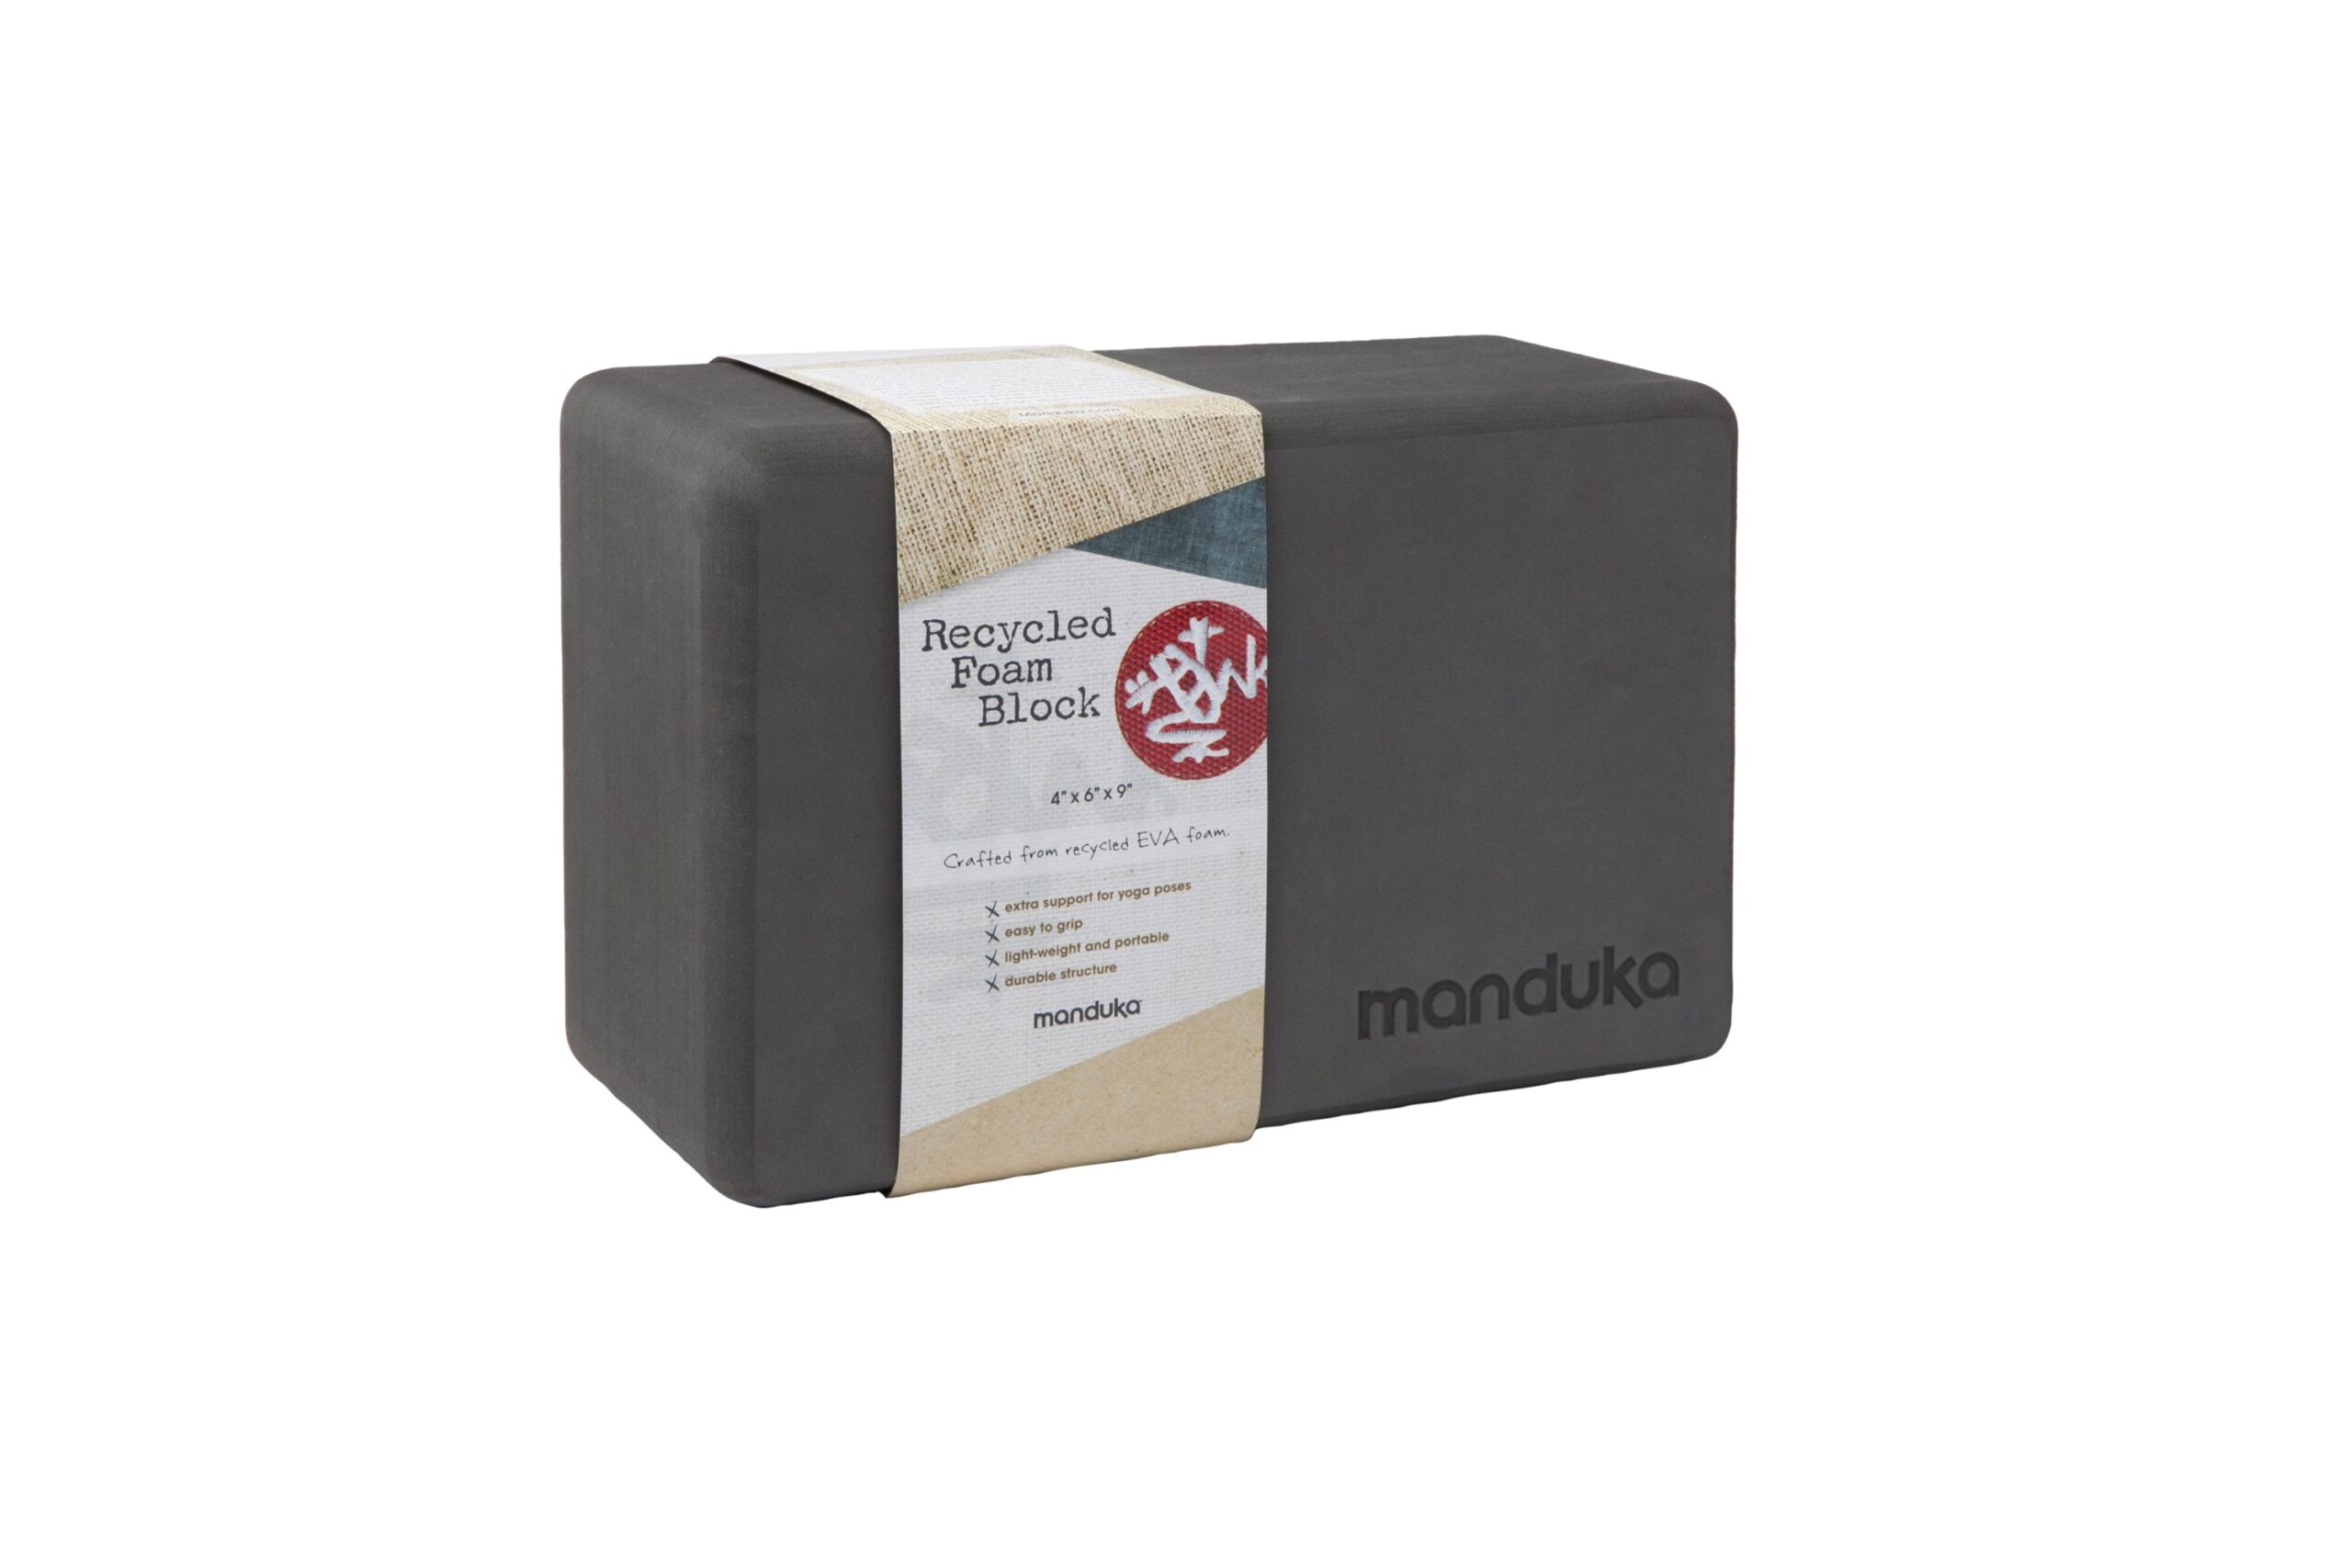 Manduka Recycled Foam Yoga Blocks Review 